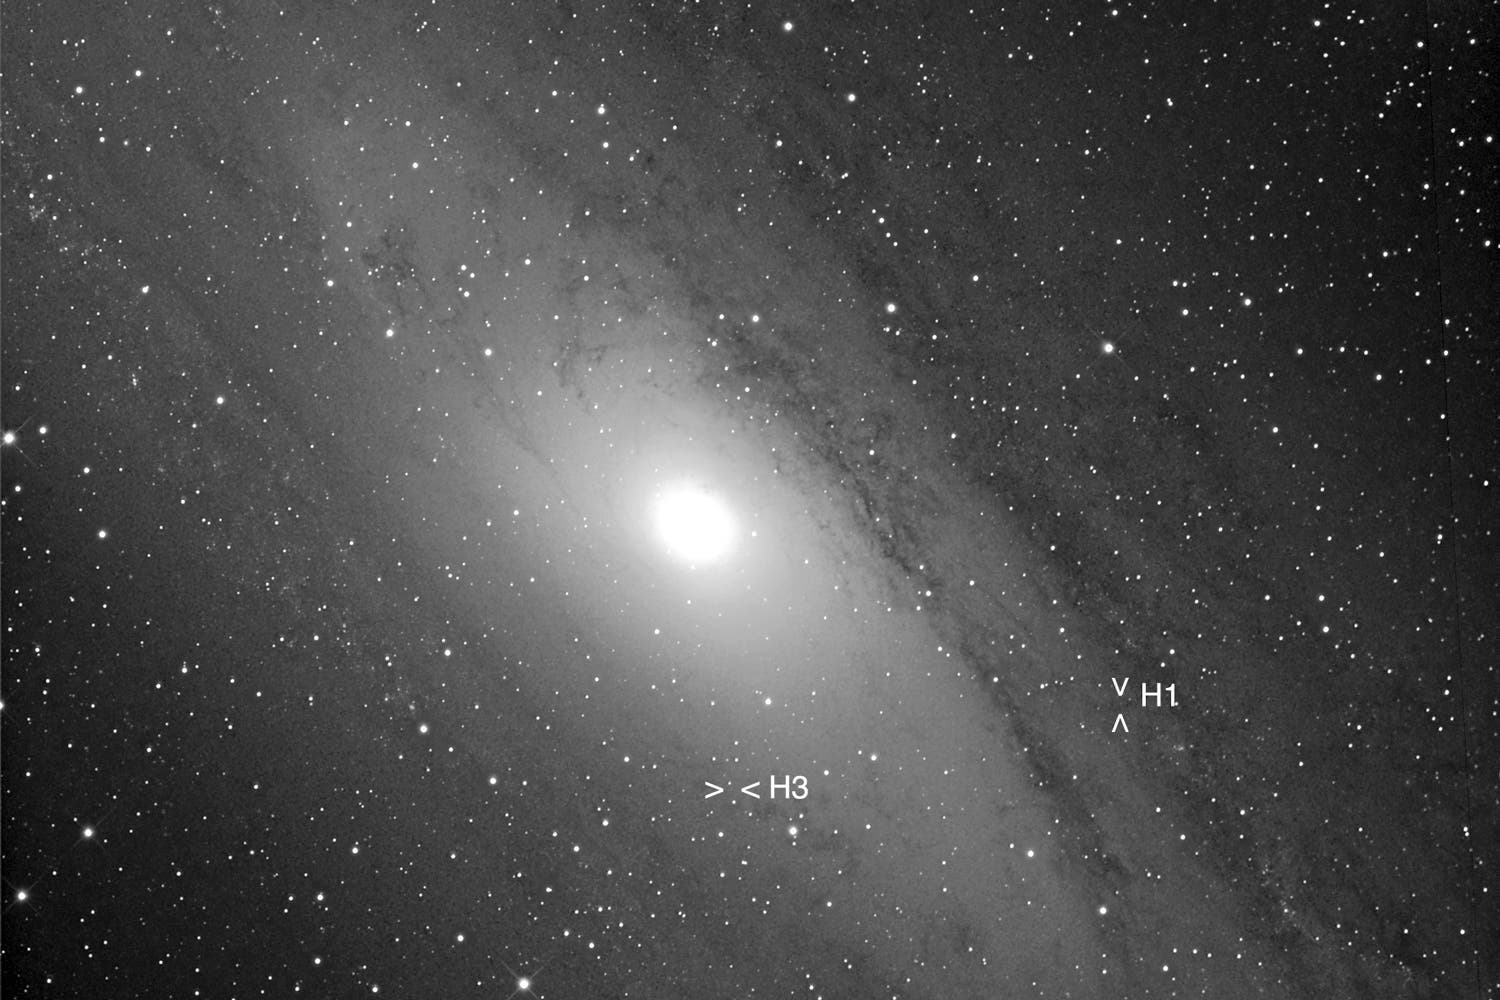 M 31 Entfernungsbestimmung mittels Cepheiden (1)